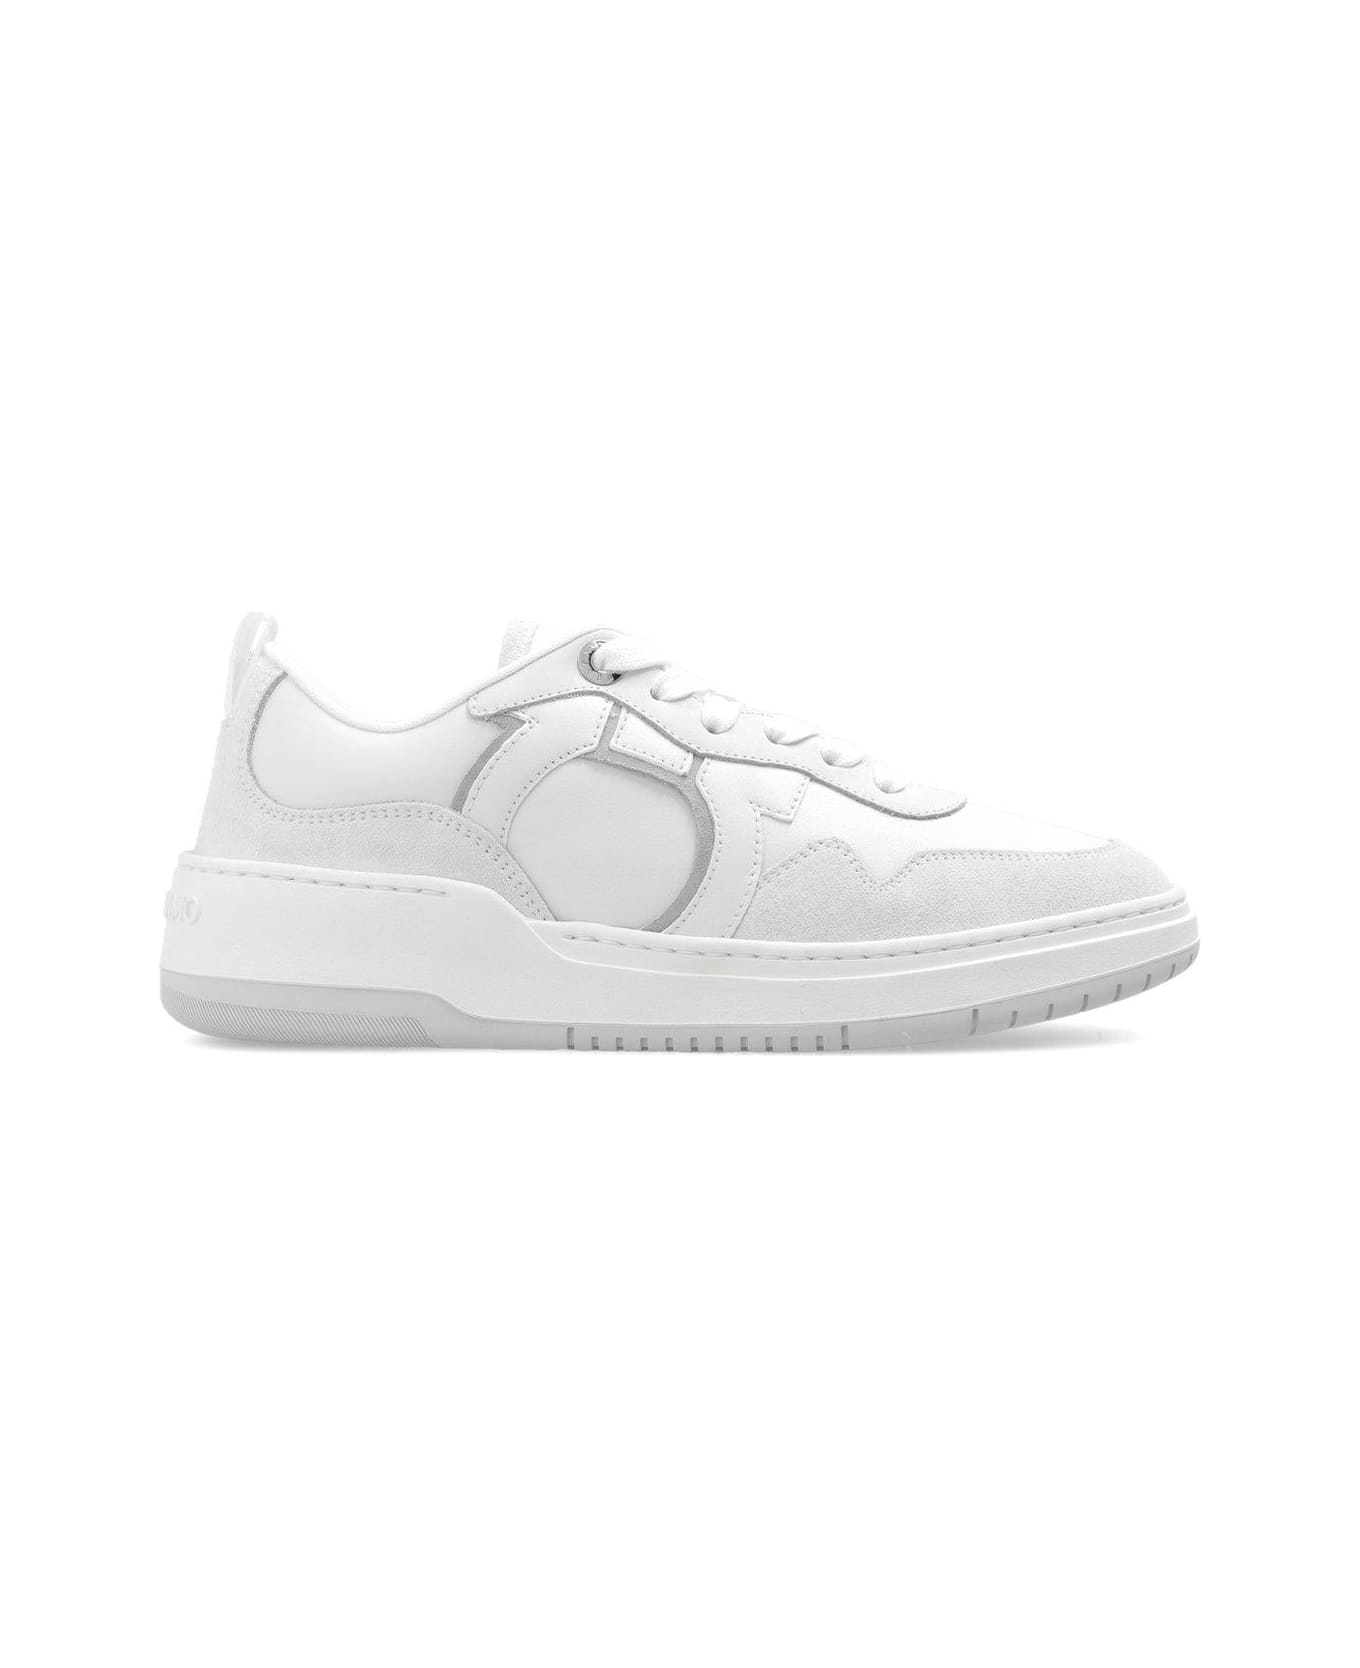 Ferragamo Gancini Low-top Sneakers - Optic White